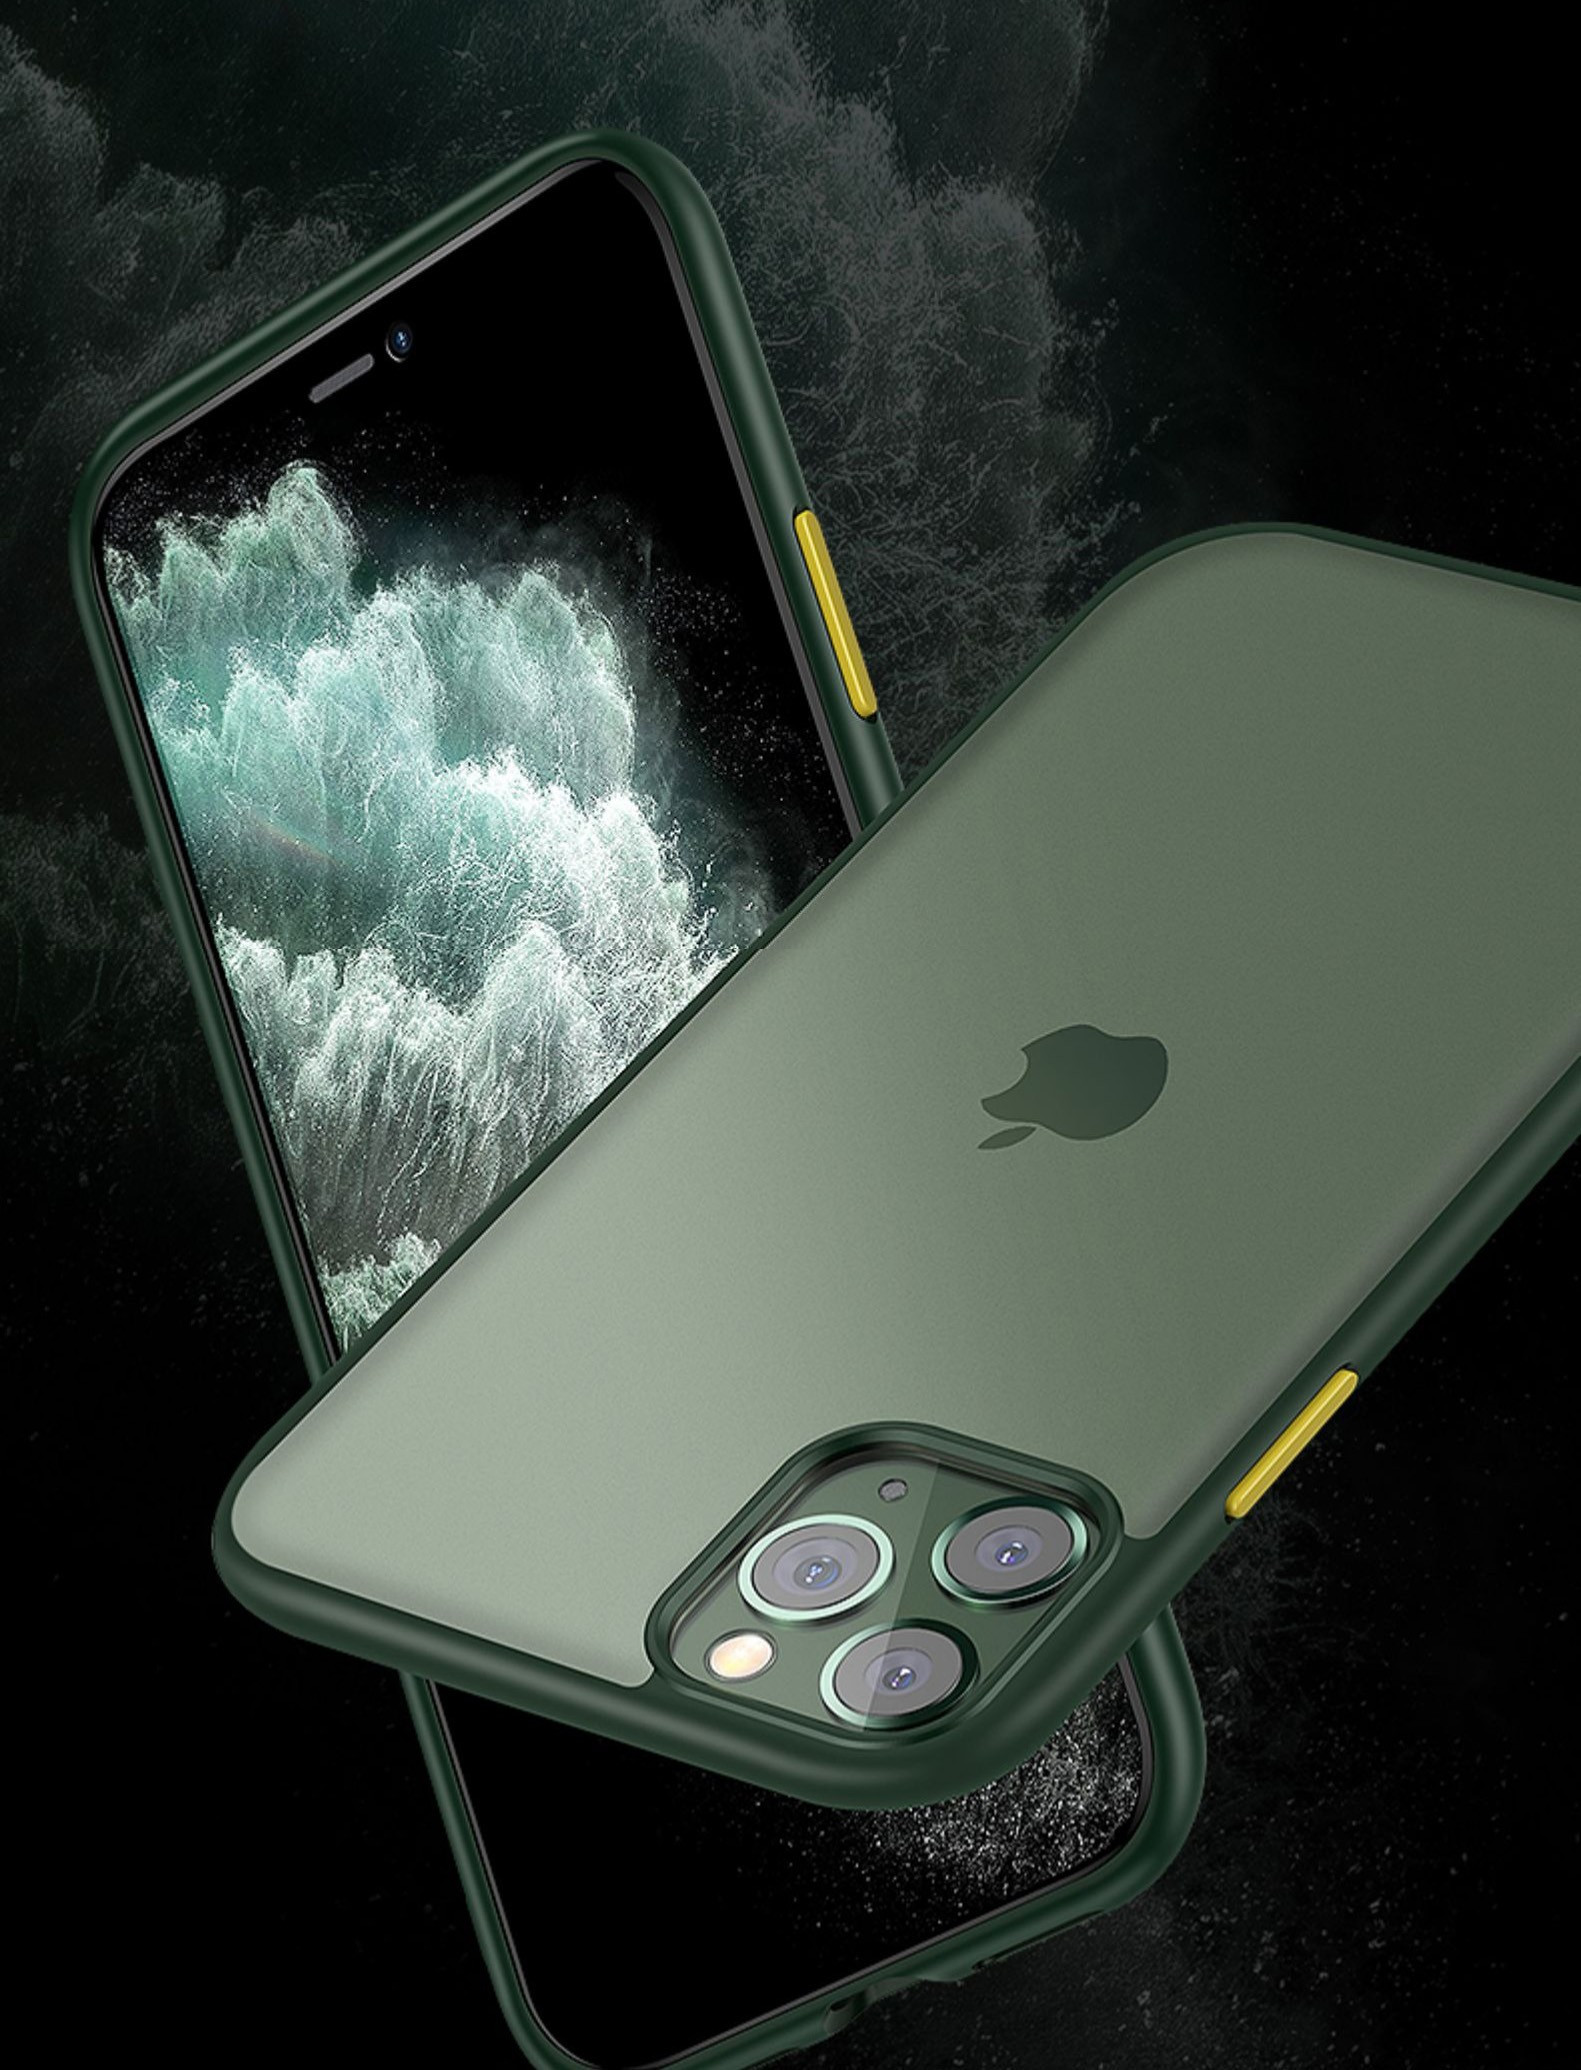 Luxos Apple Iphone 11 Pro Max Translucent Armor Case Vibrant